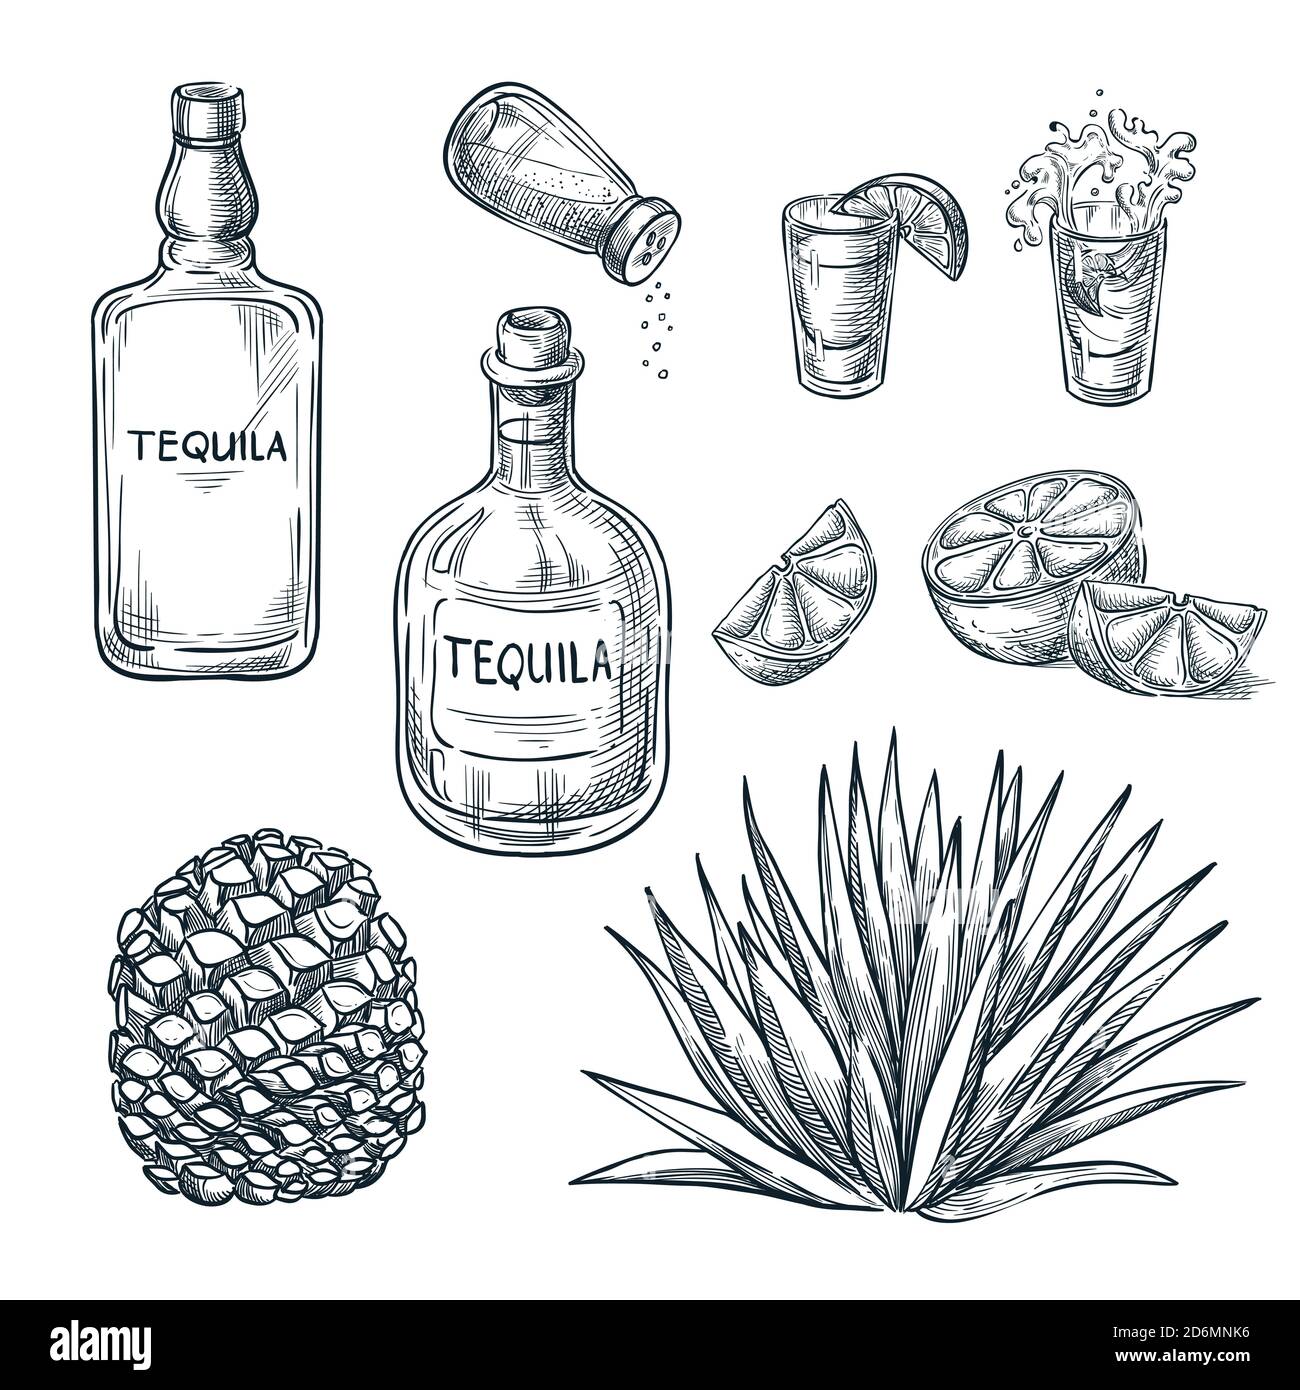 Bottiglia di tequila, shot glass e ingredienti, disegno vettoriale. Elementi di design del menu delle bevande alcoliche messicane. Agave pianta e radice illustrazione. Illustrazione Vettoriale